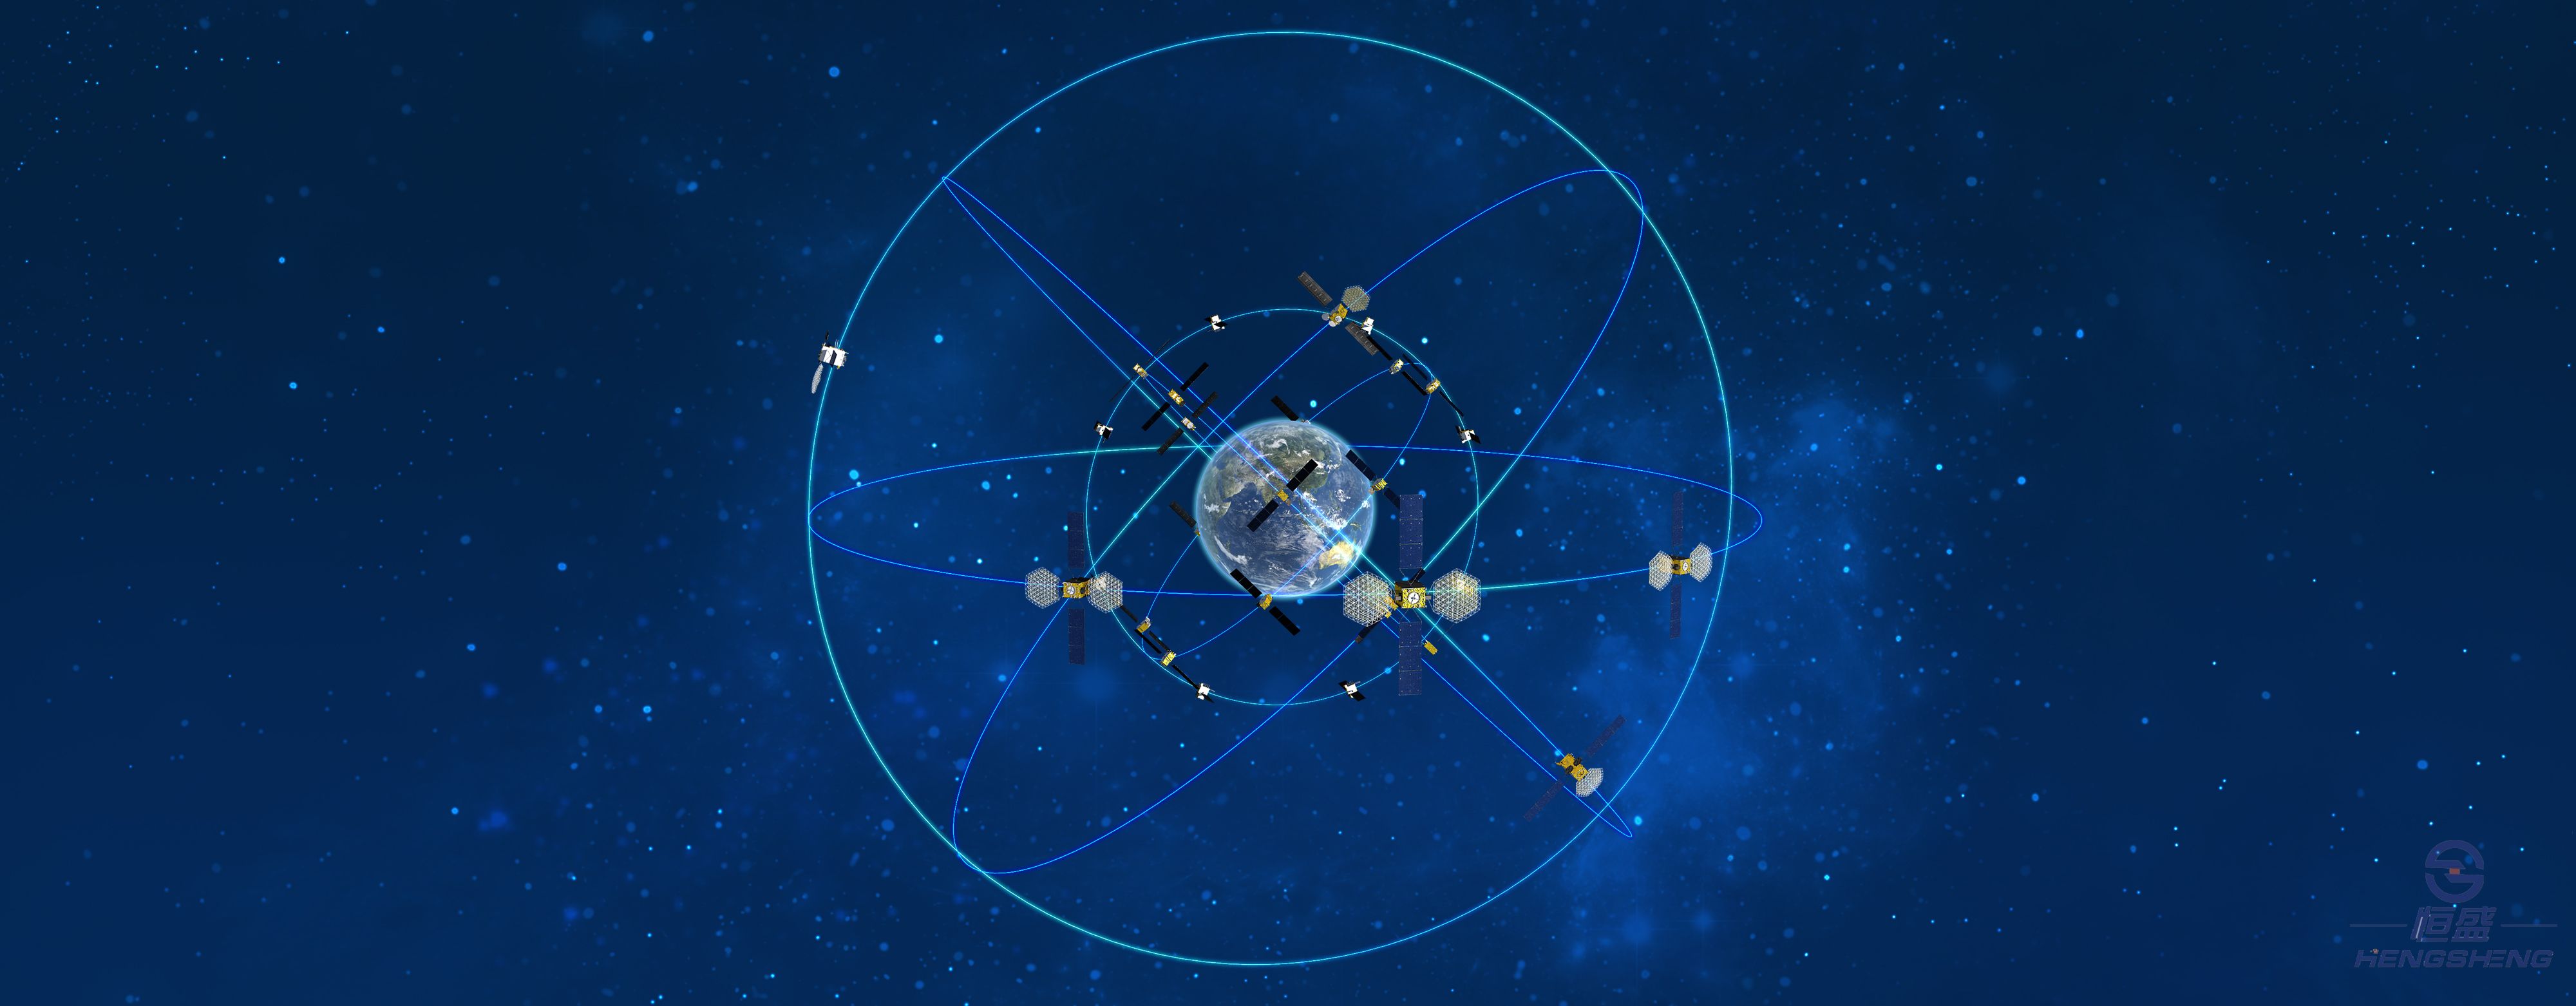 北斗卫星导航系统介绍(图1)